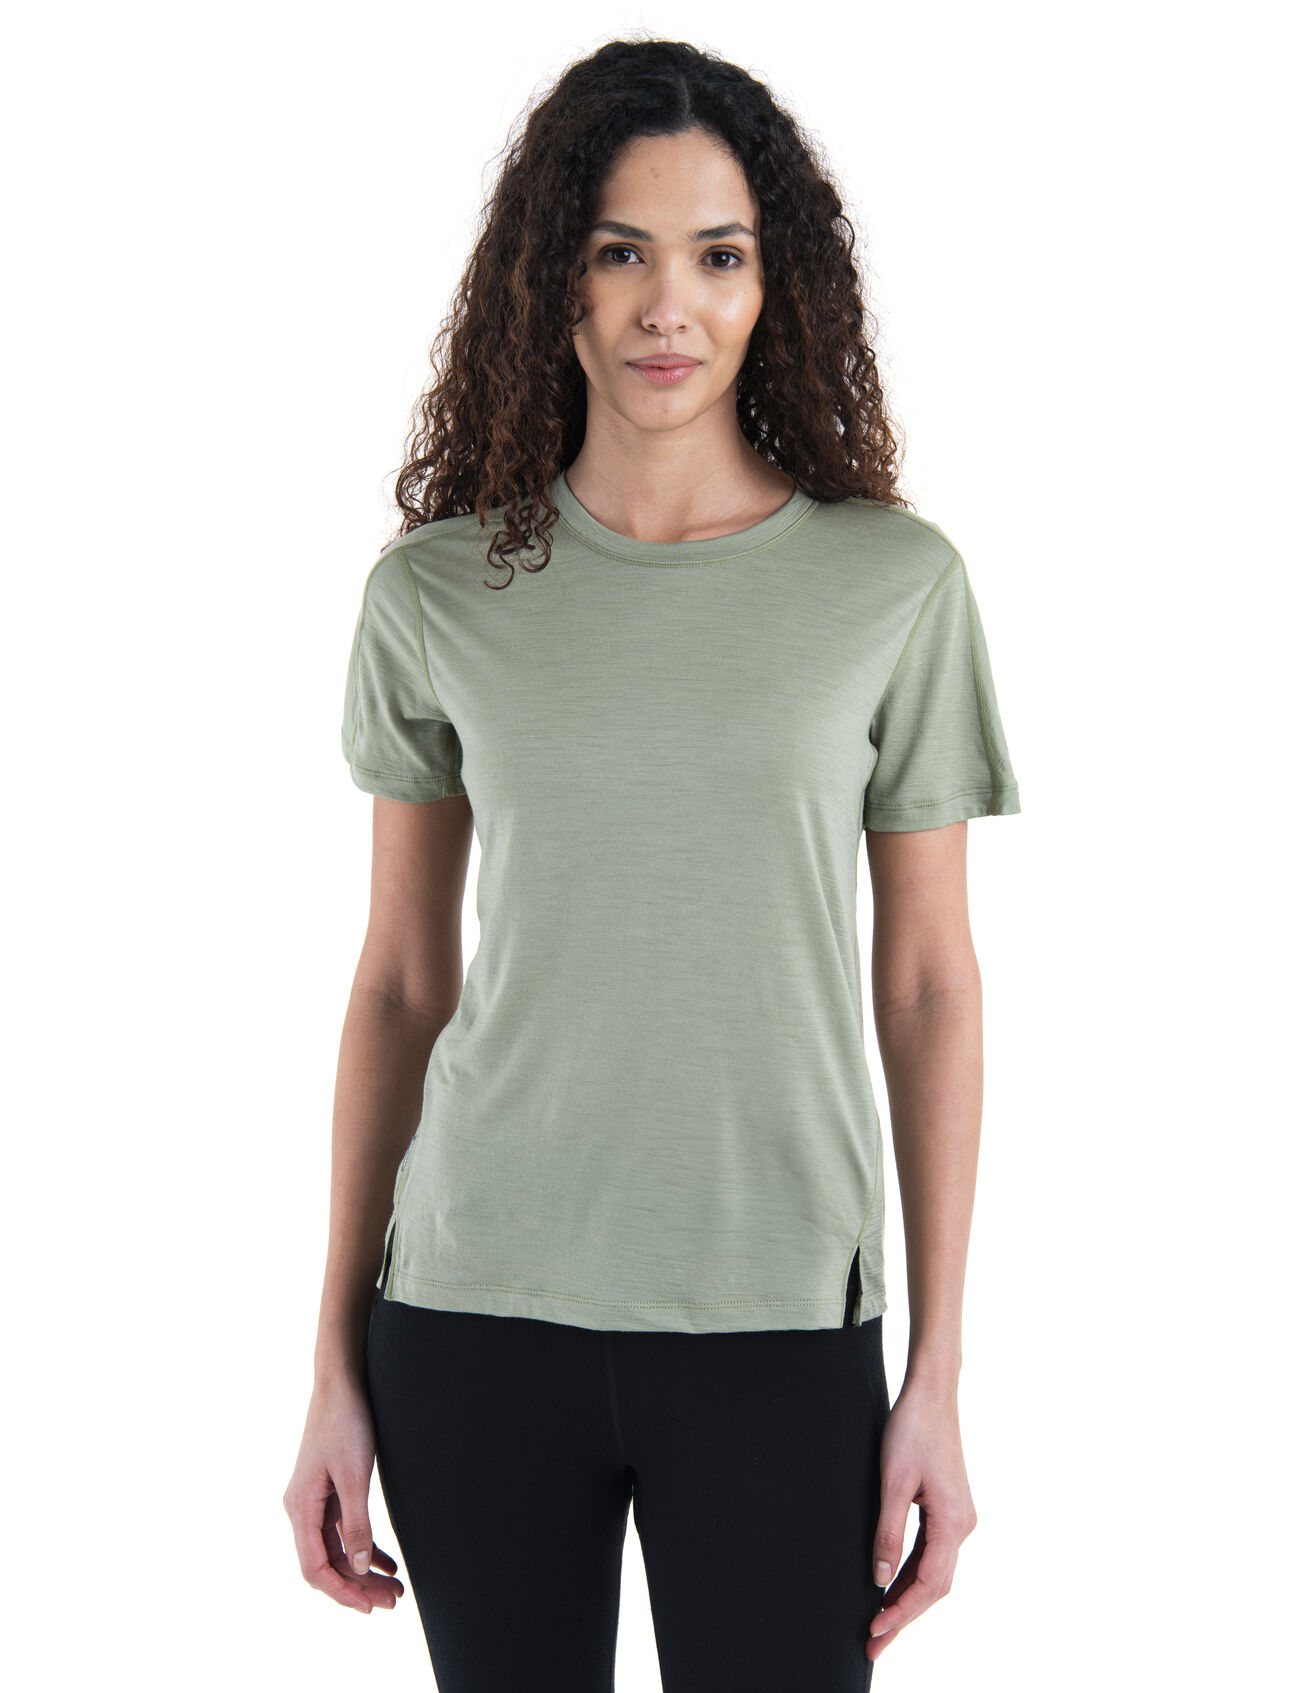 150 MerinoFine™ Ace T-Shirt Damen Ein leichtgewichtiges, überall einsetzbares Funktionsshirt für hohe Intensität, das MerinoFine™ Ace T-Shirt reguliert die Körpertemperatur und hemmt die Geruchsbildung dank 100% ultrafeiner Merinowolle.